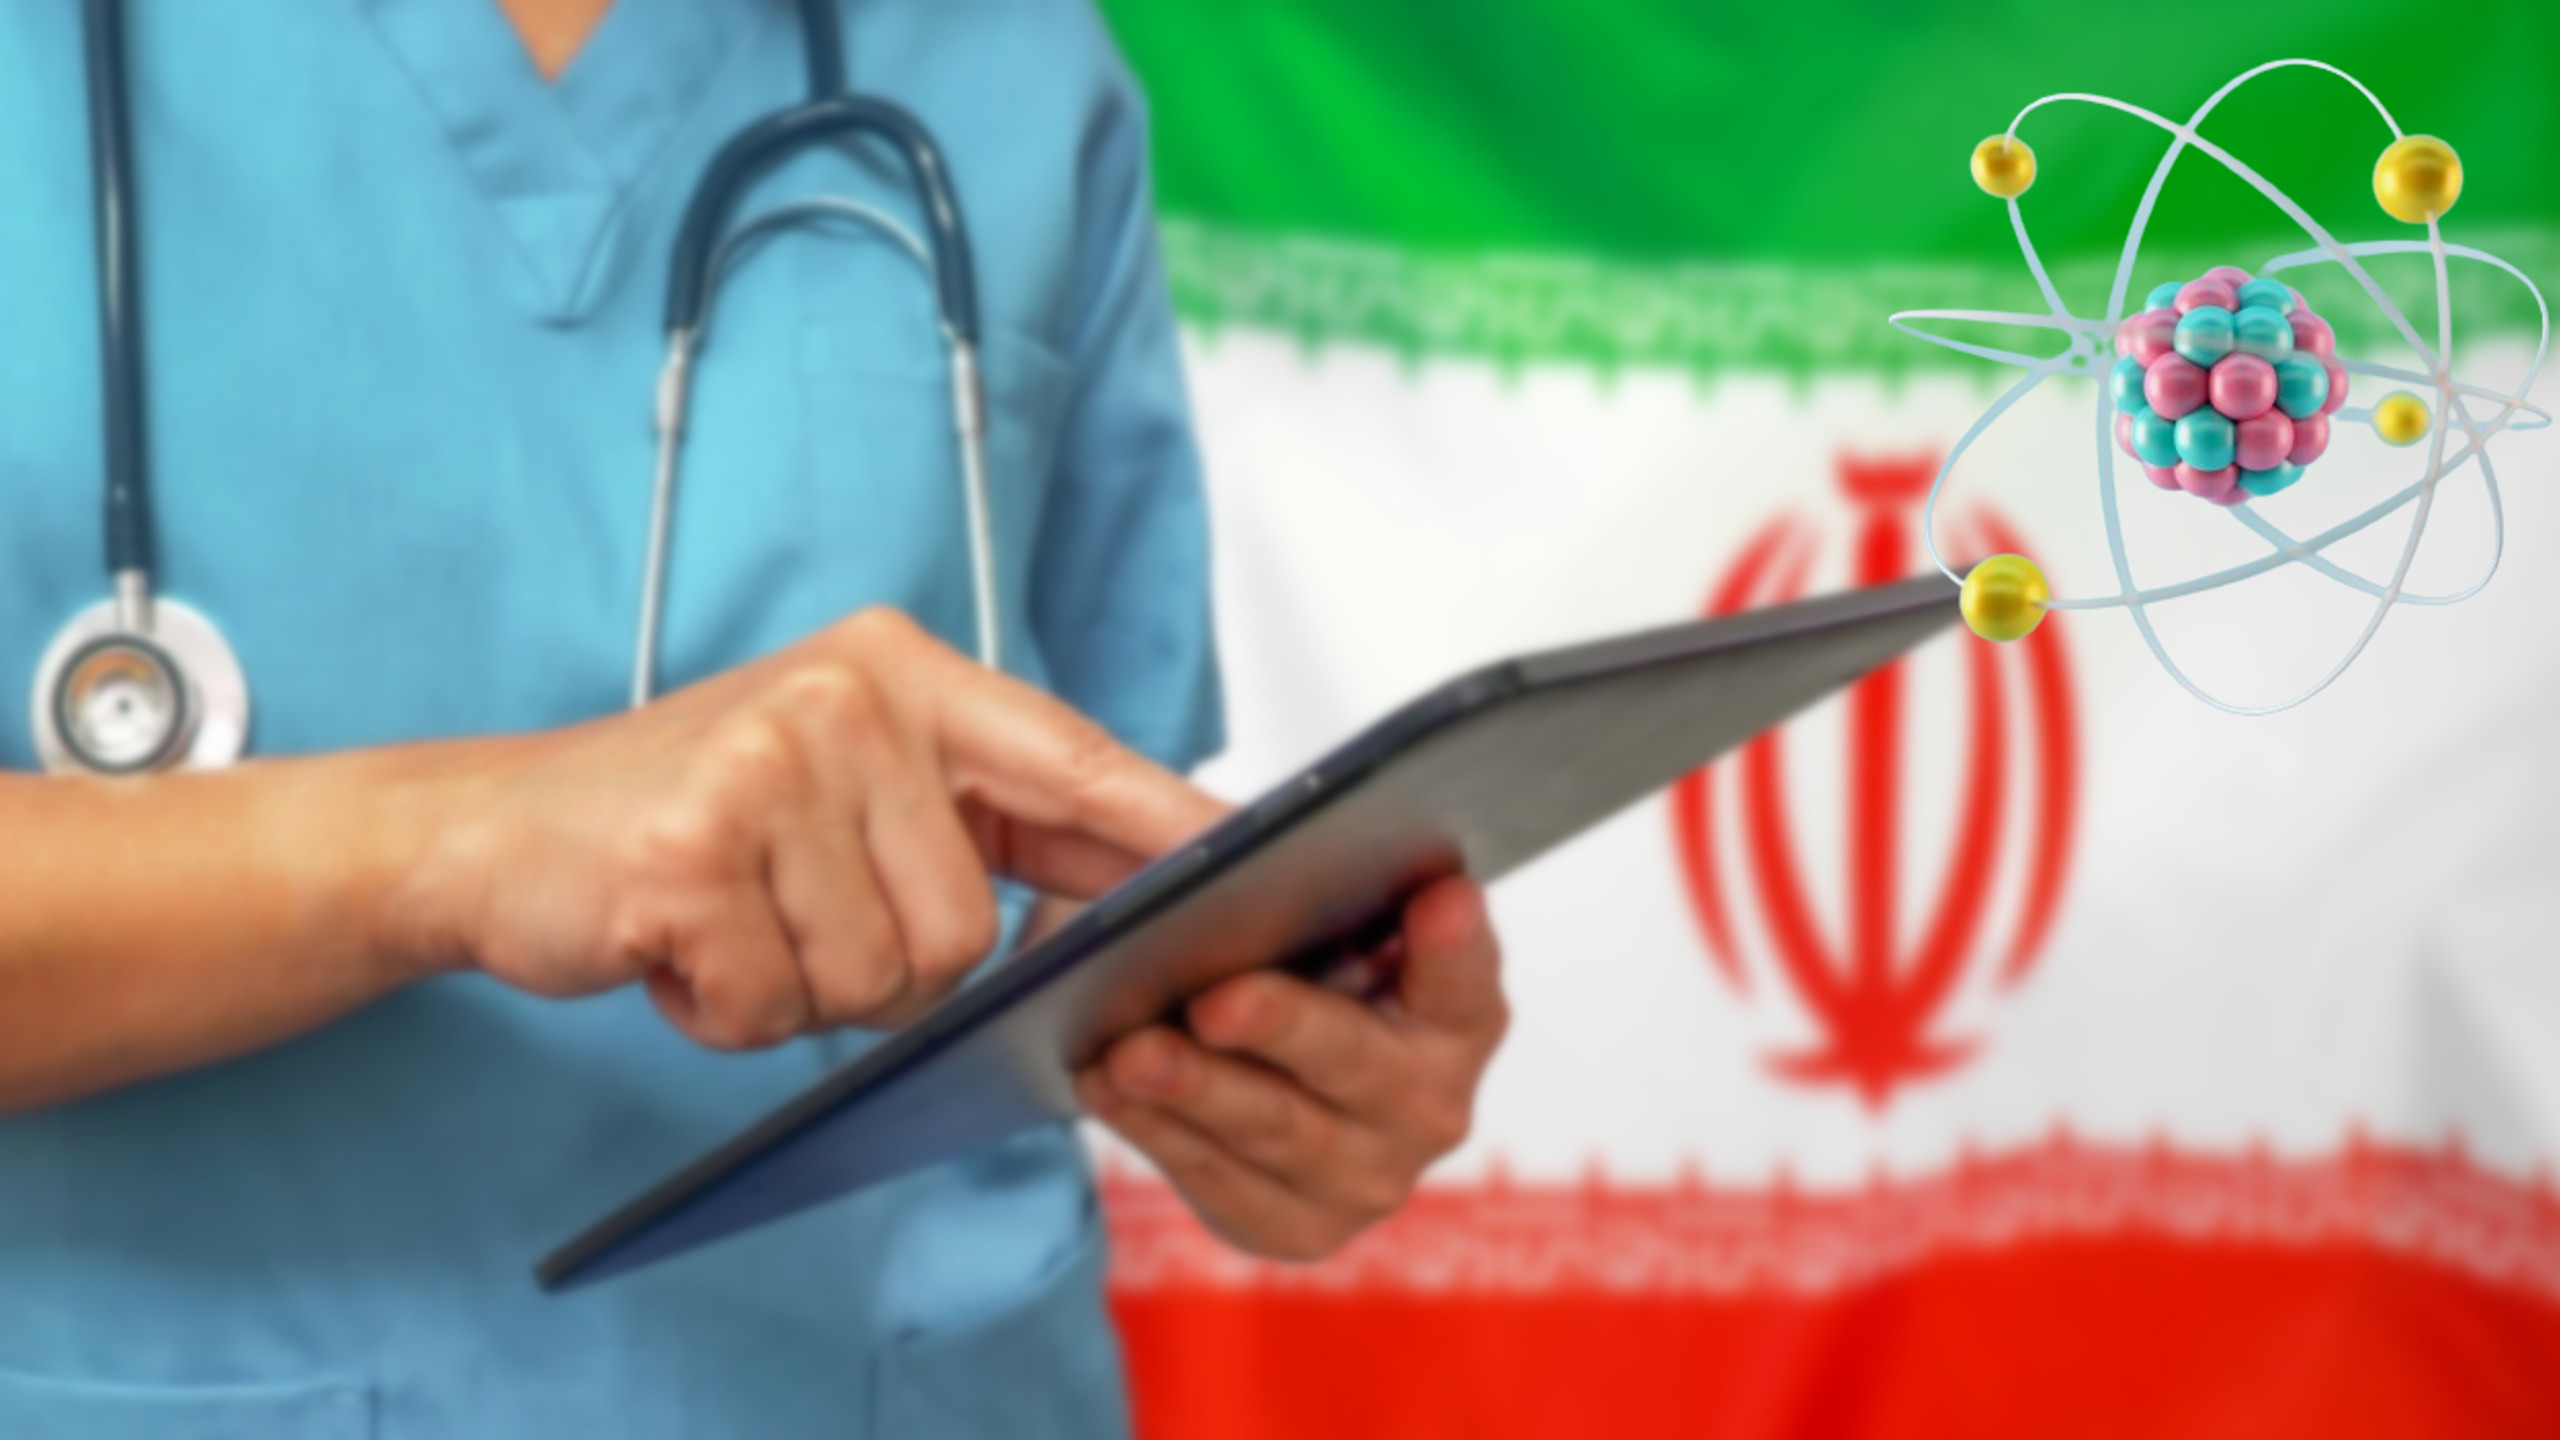 Iran boekt aanzienlijke vooruitgang op het gebied van nucleaire medische technologie en energieproductie